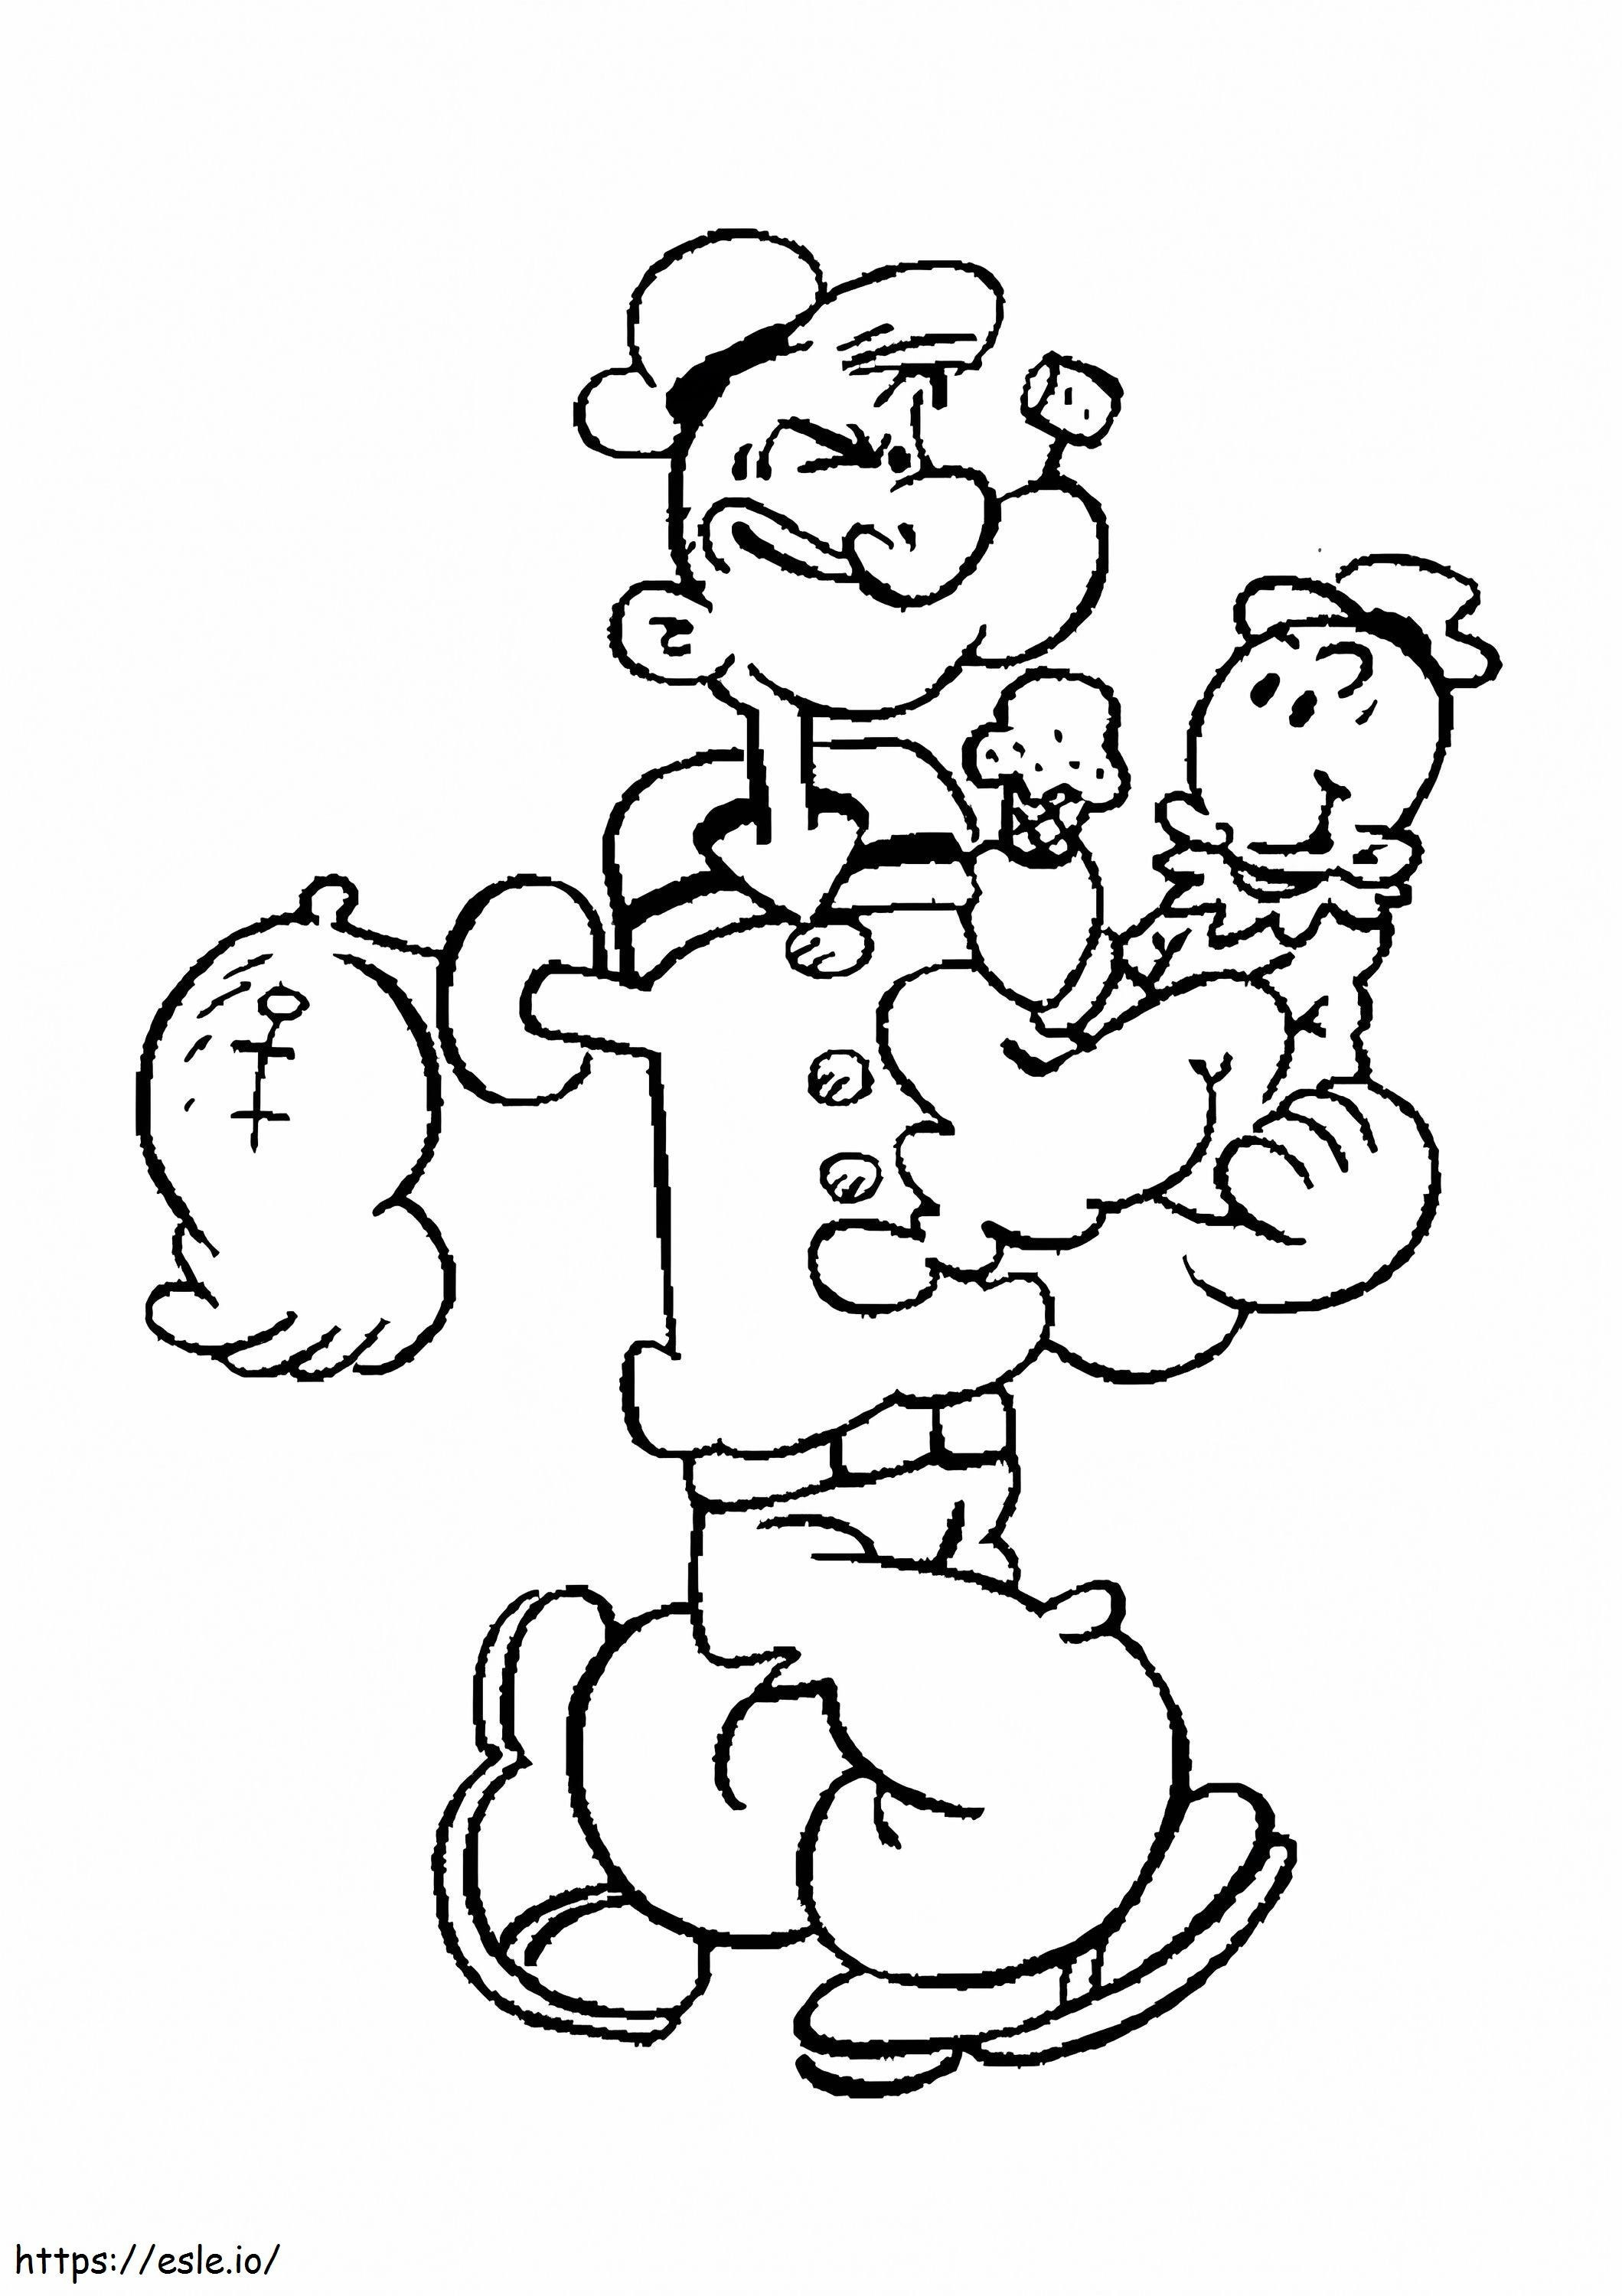 1533088490 Popeye met jongen in A4-formaat kleurplaat kleurplaat